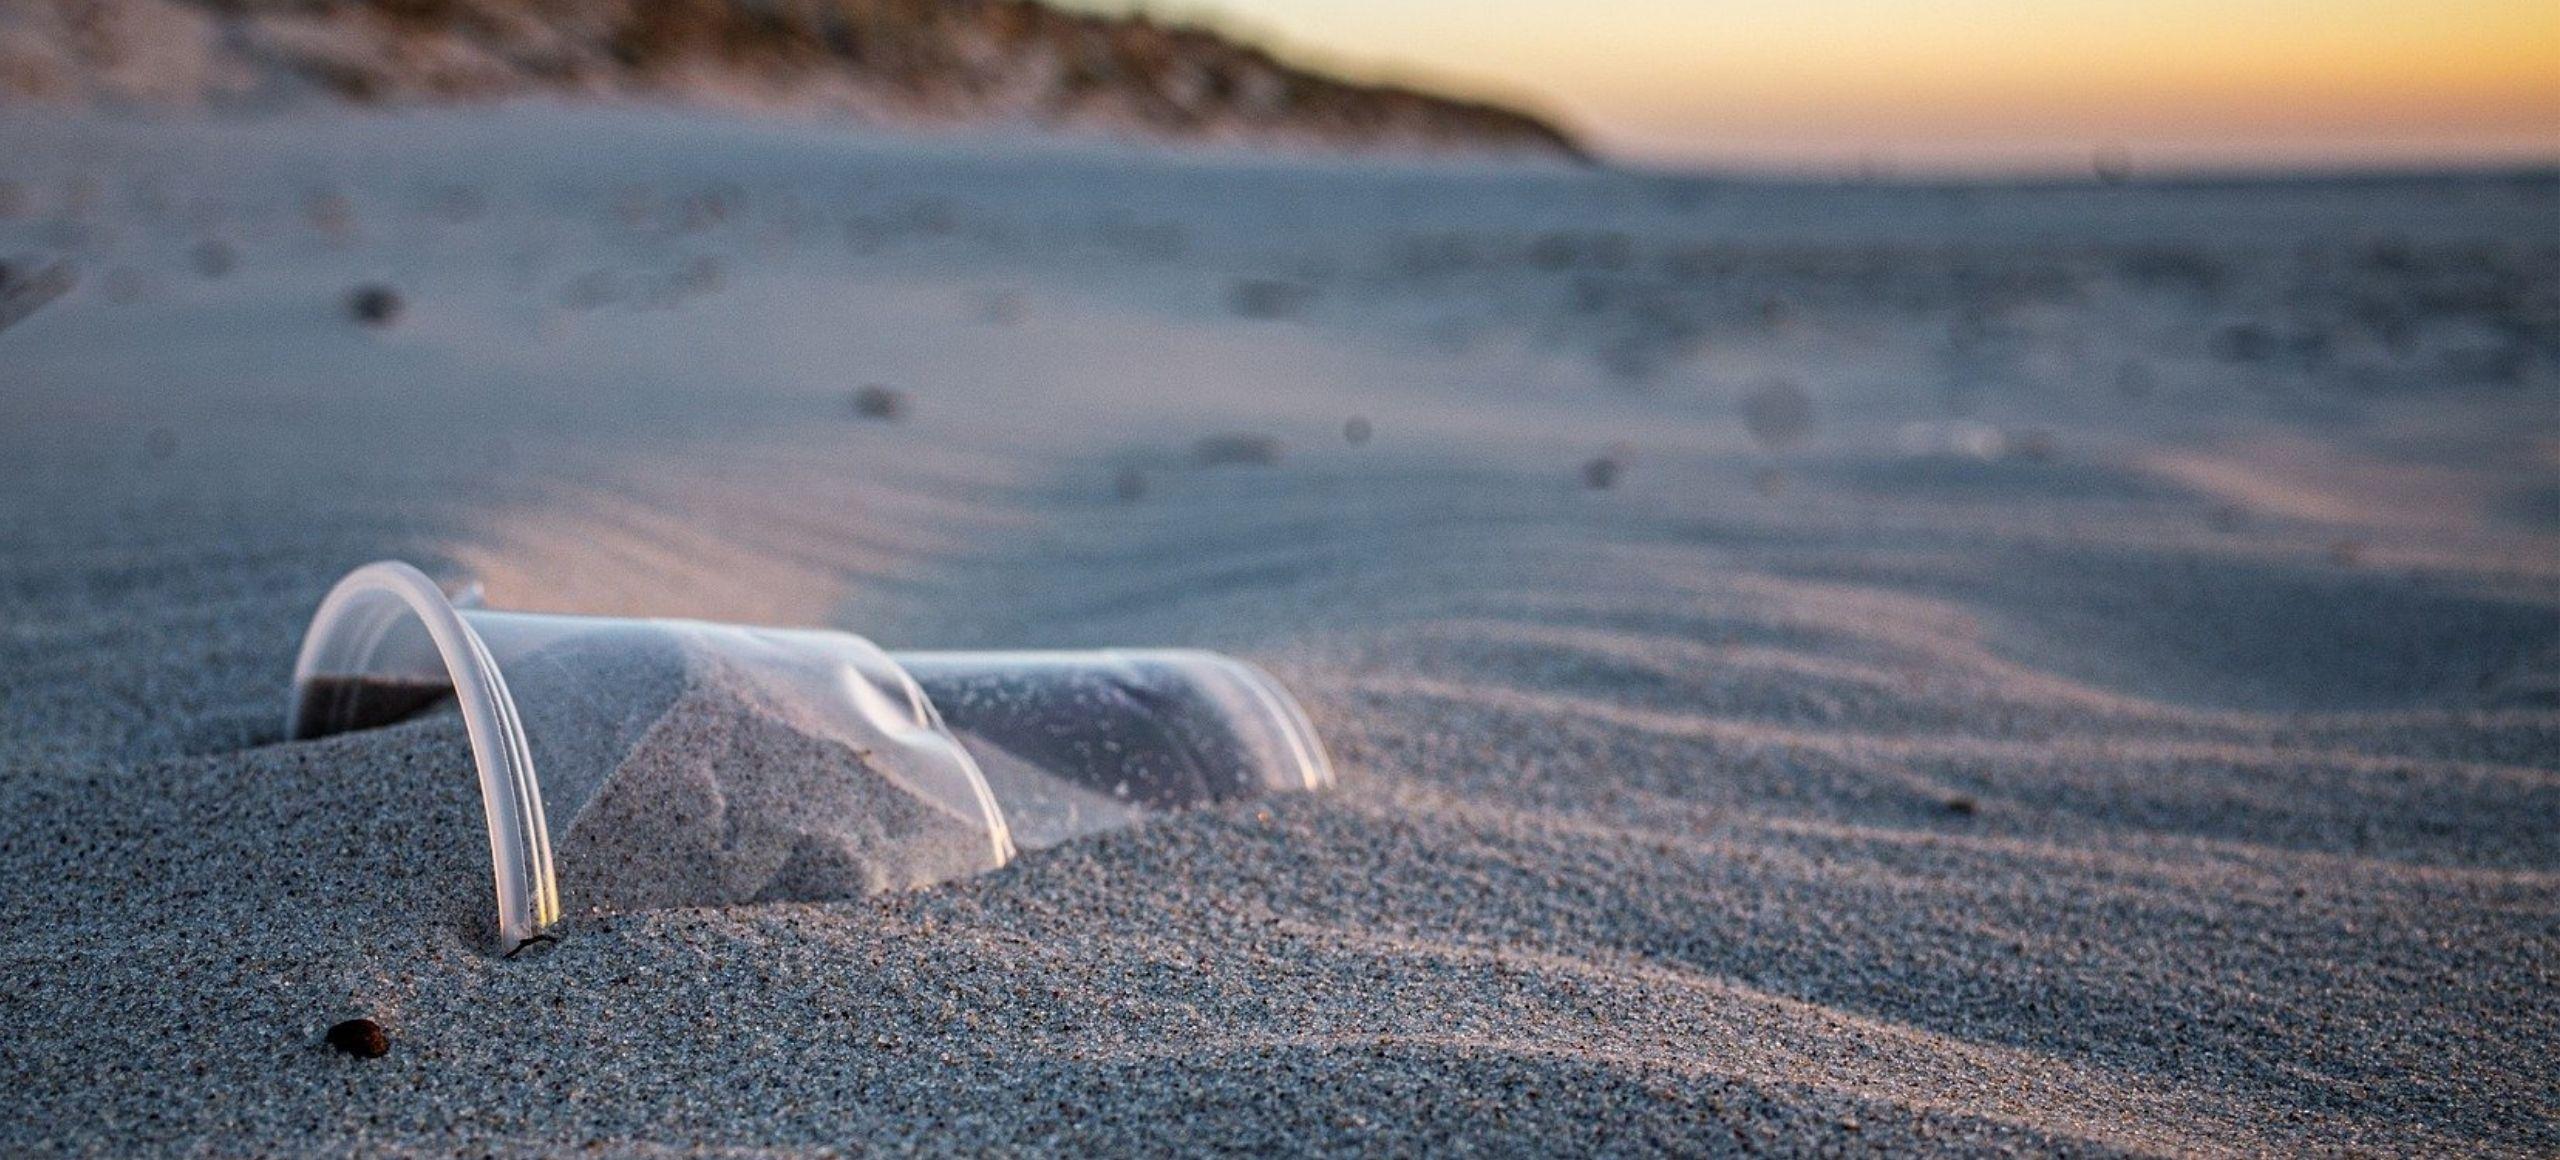 Verre en plastique sur une plage